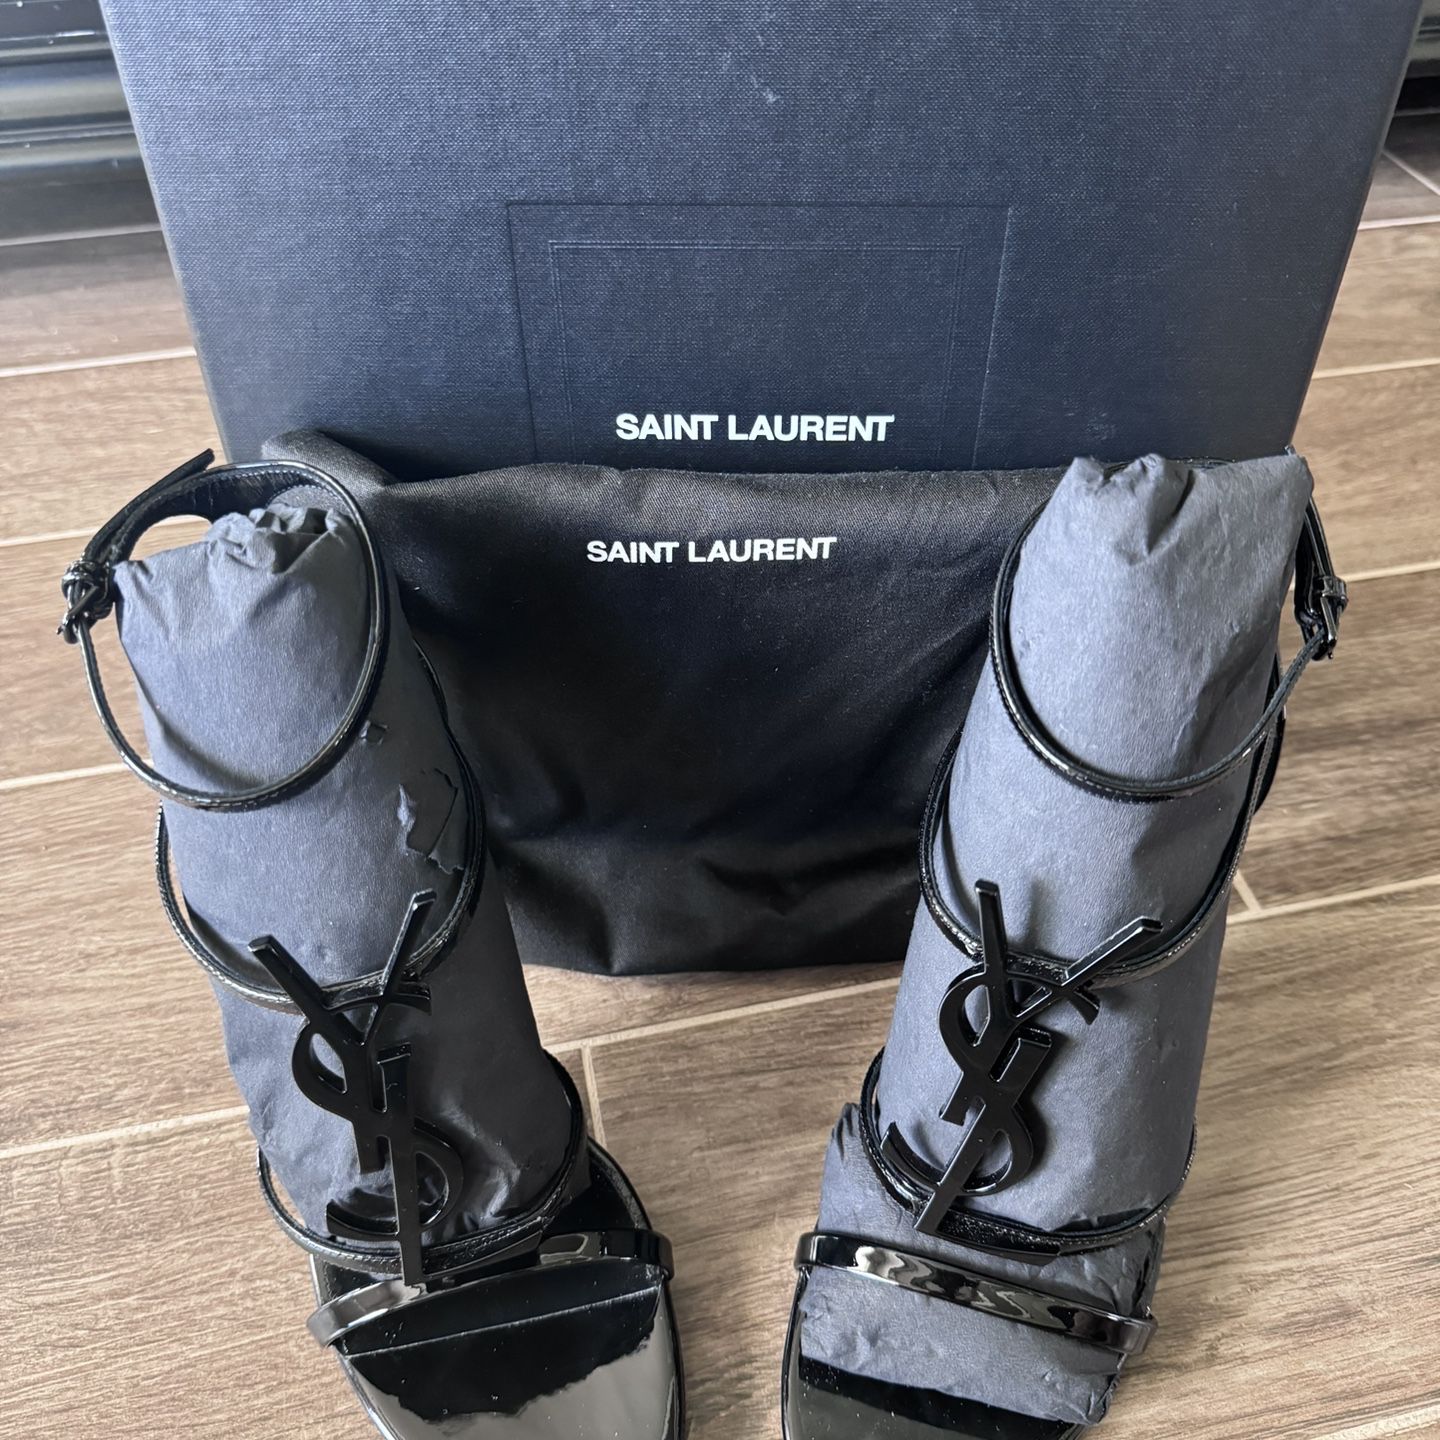 Saint Laurent Casandra Heels - Worn Twice